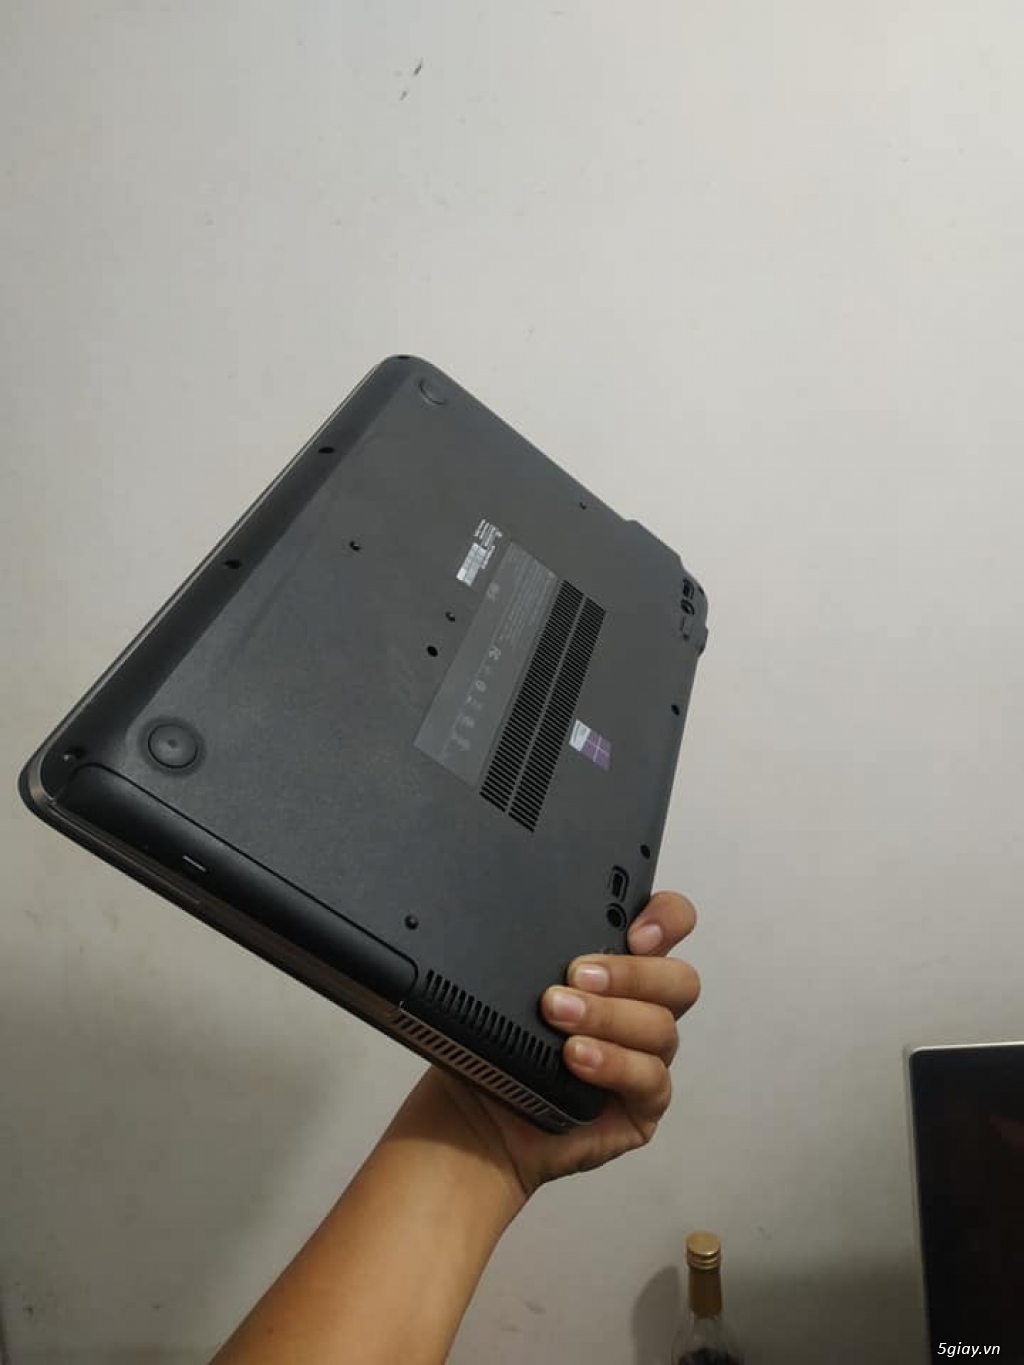 Laptop Hp Probook 640 G3 - Hàng xách tay USA - 3